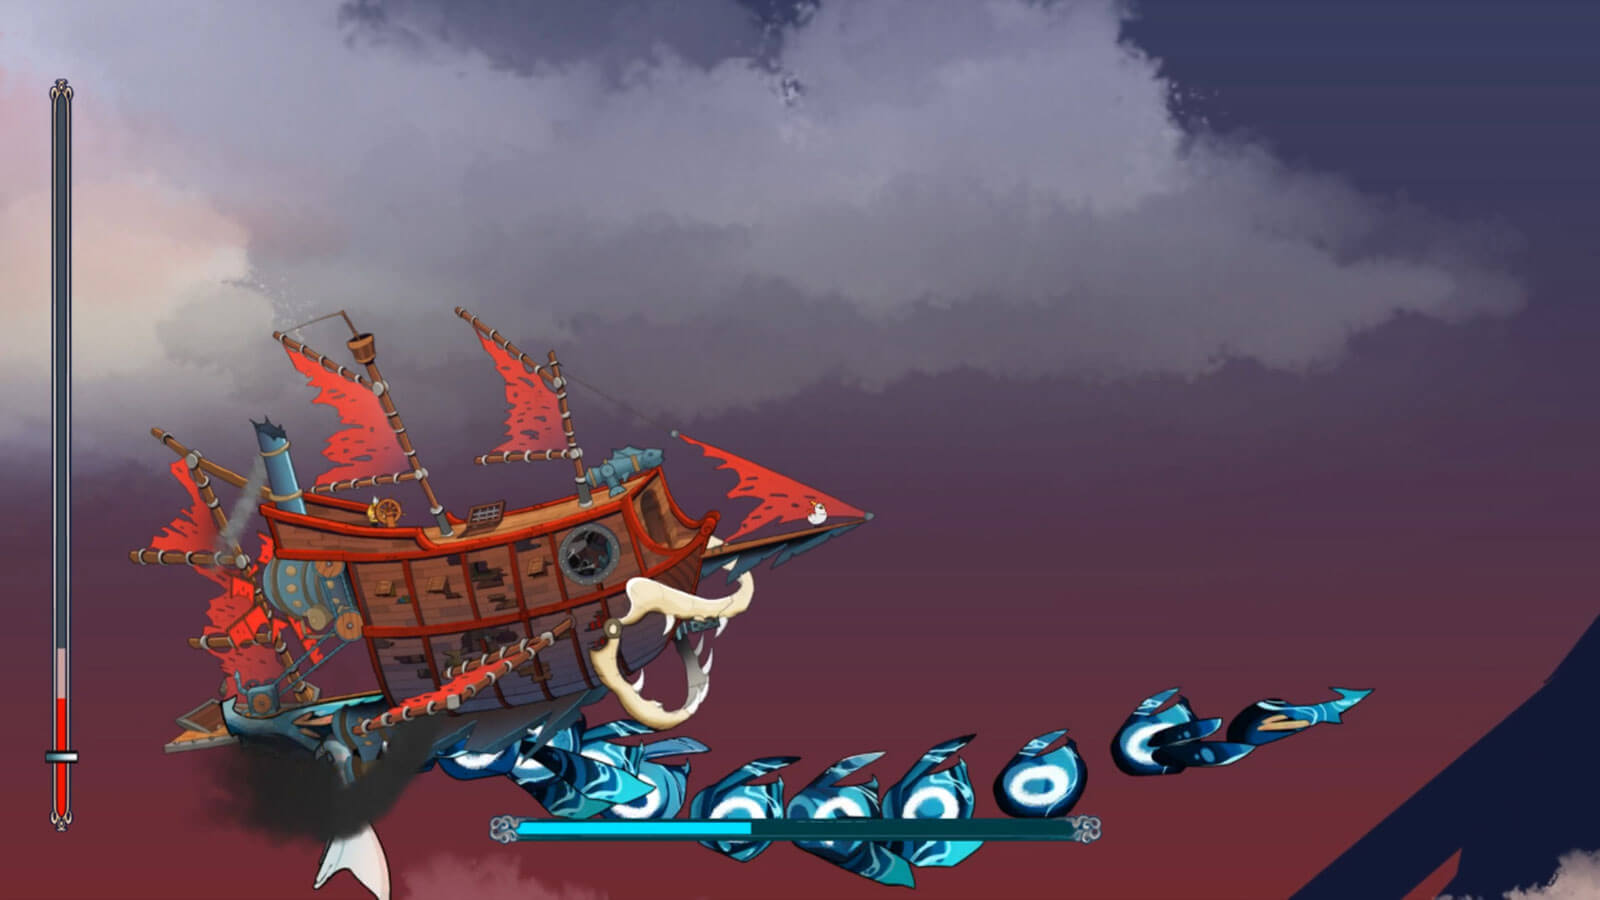 A pirate ship flies near a blue boss character resembling a dragon